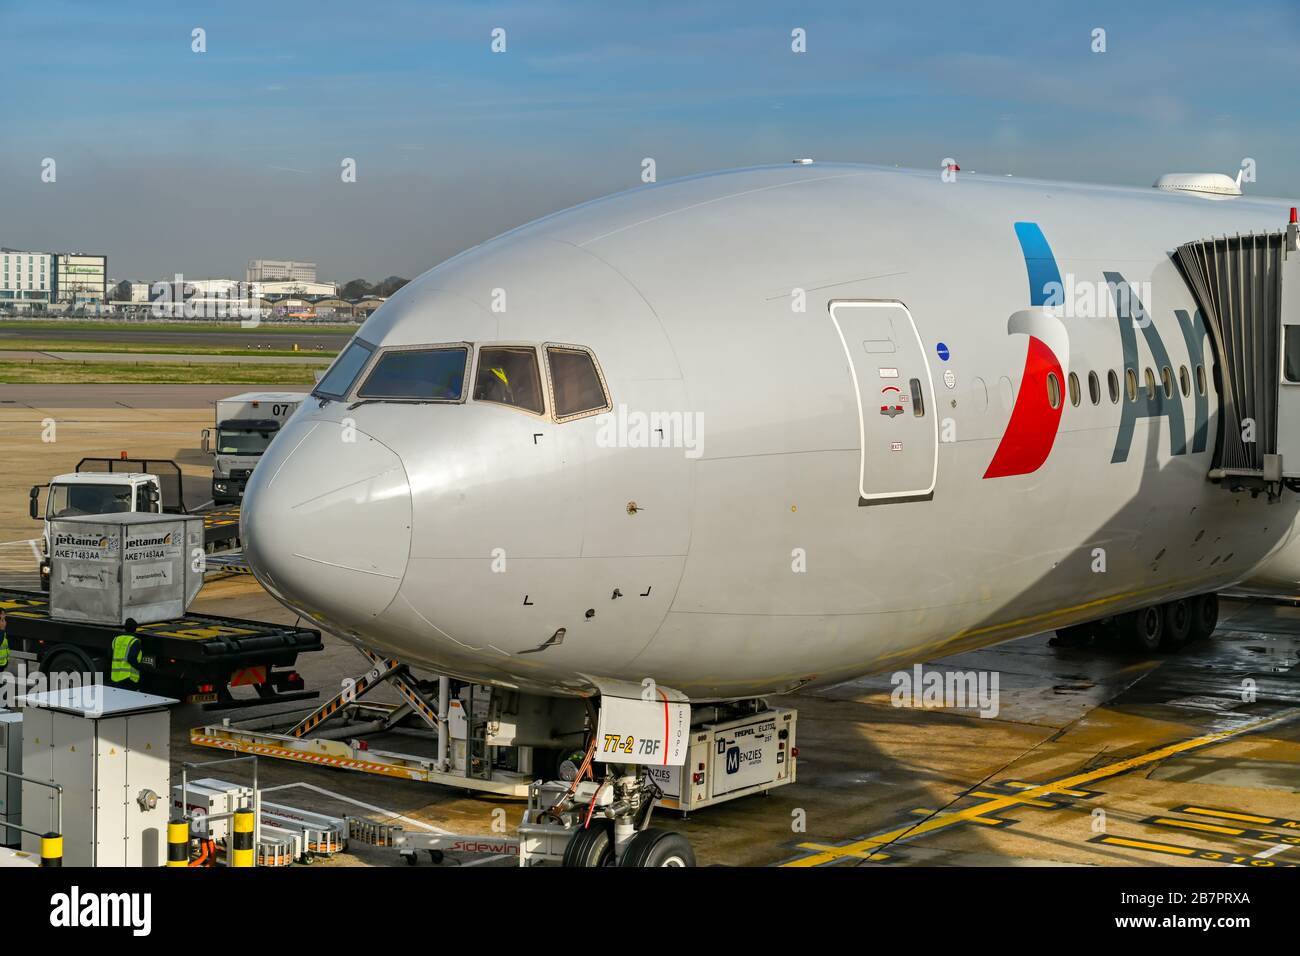 LONDON, ENGLAND - NOVEMBER 2018: Langstreckenflieger Boeing 777 der American Airlines, geparkt am Terminal 3 am Flughafen London-Heathrow. Stockfoto